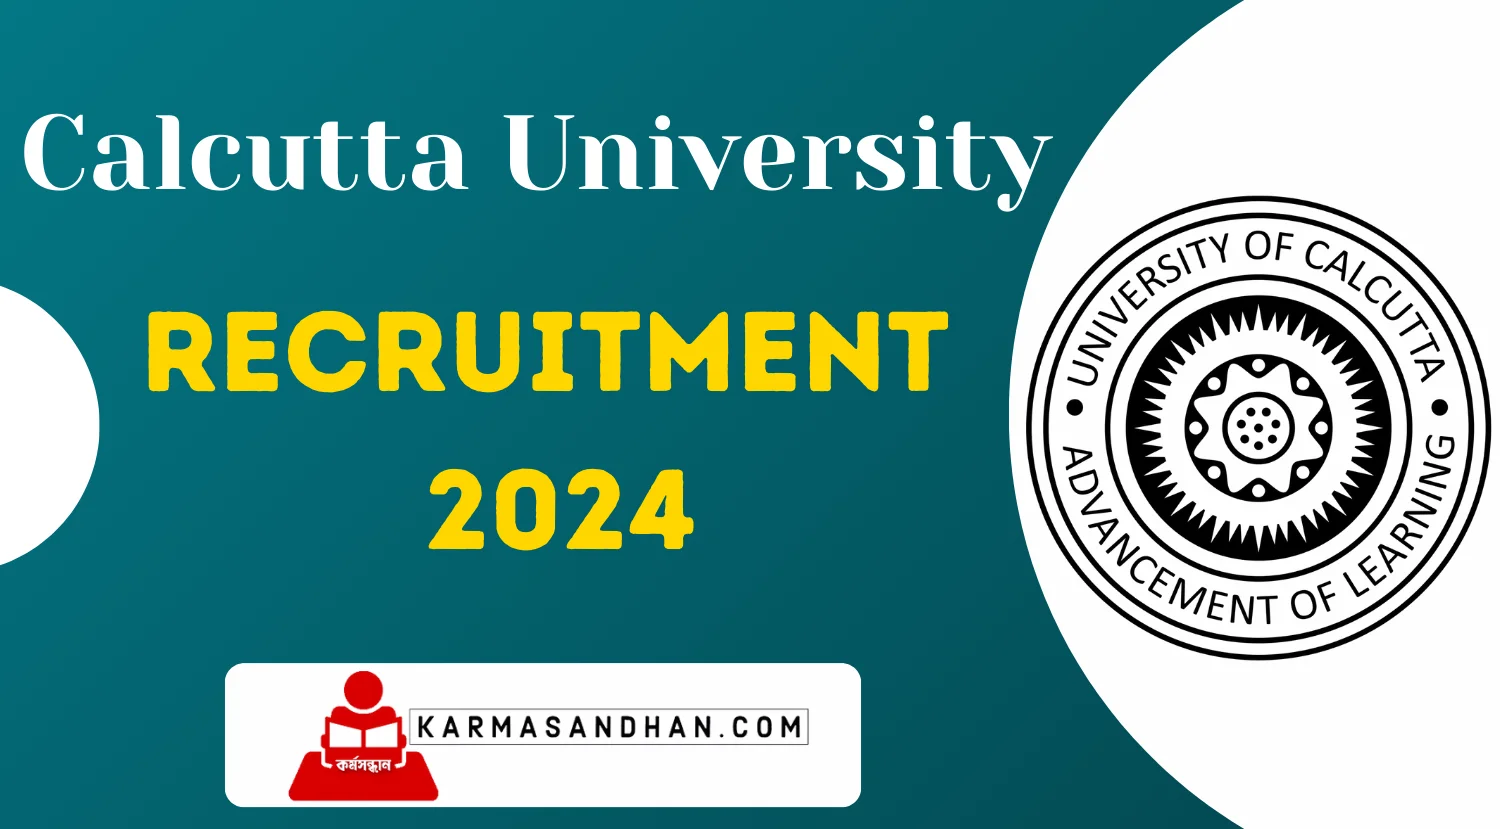 Calcutta University Research Associate Recruitment 2024